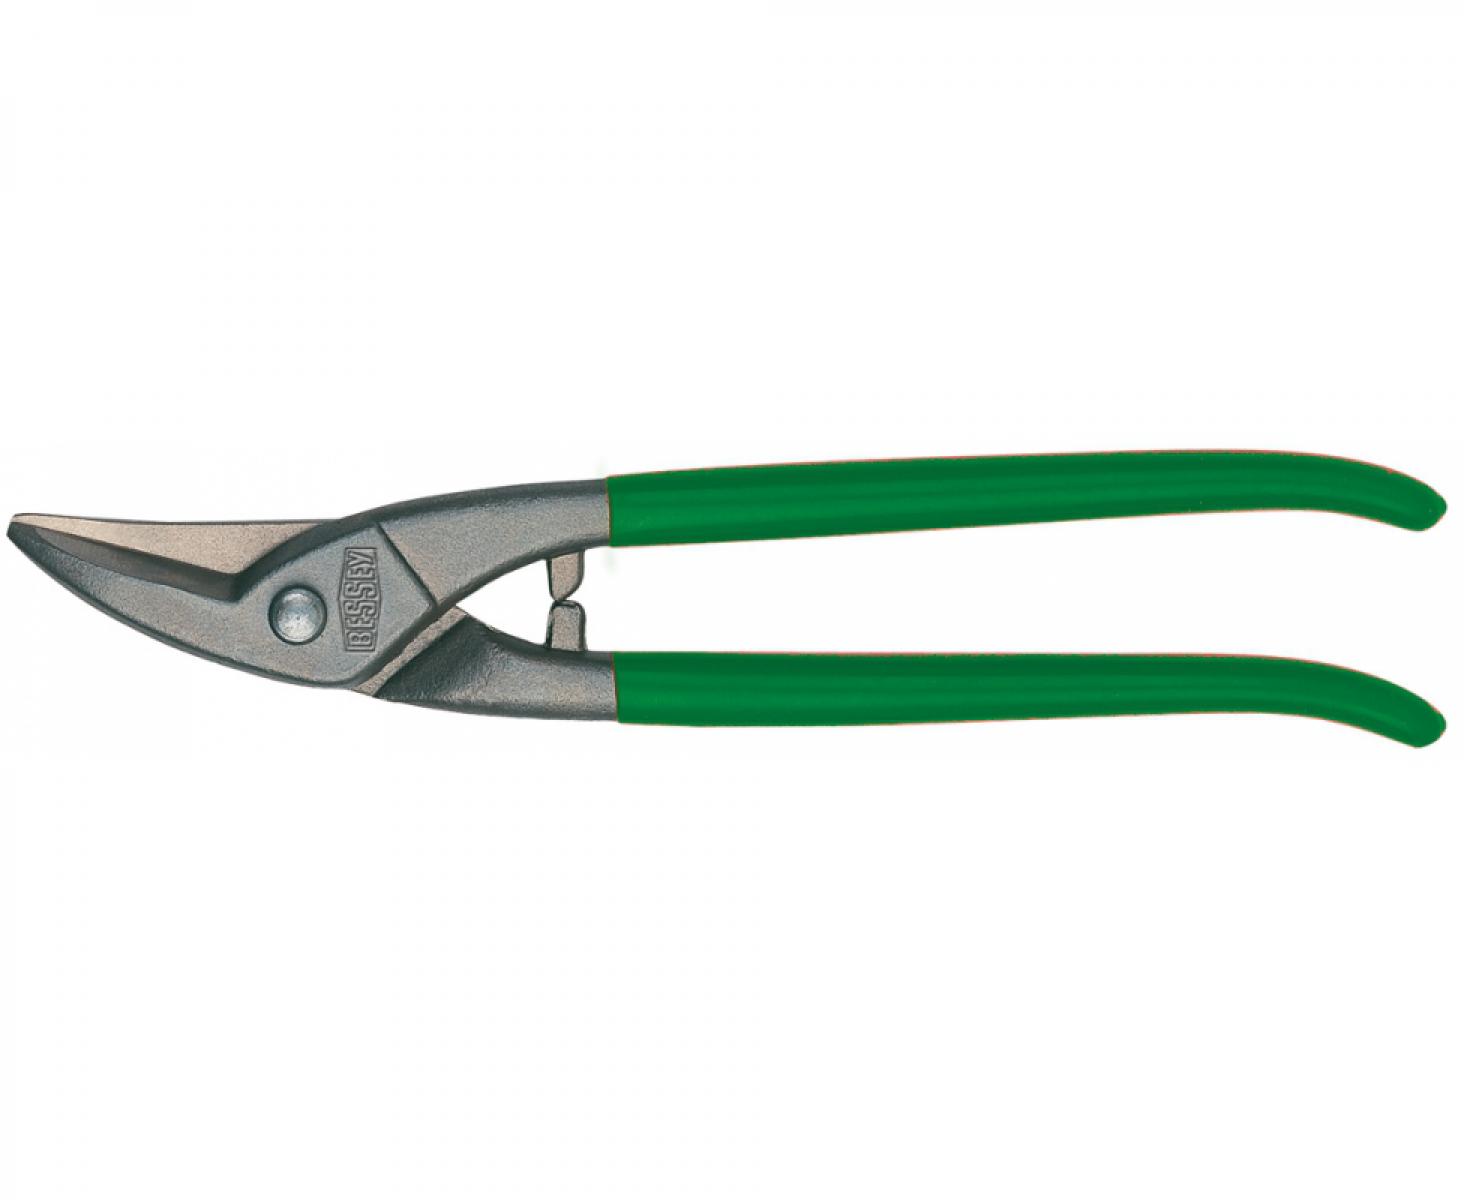 Ножницы для прорезания отверстий в листовом металле Erdi ER-D107-300L леворежущие